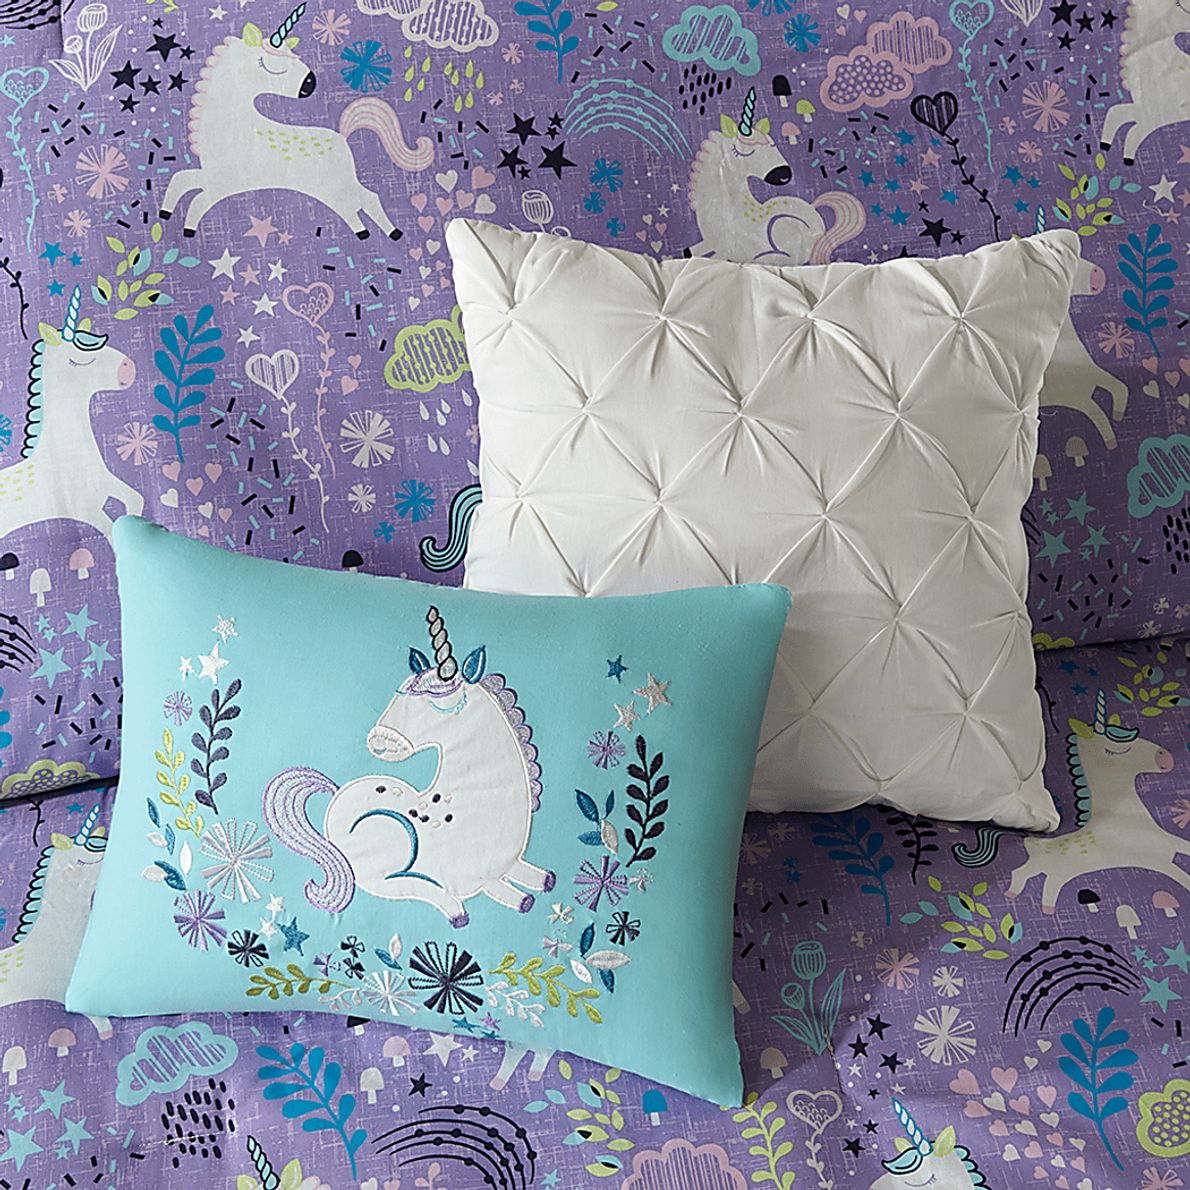 Kids Unicorn Dance Purple 5 Pc Full/Queen Comforter Set